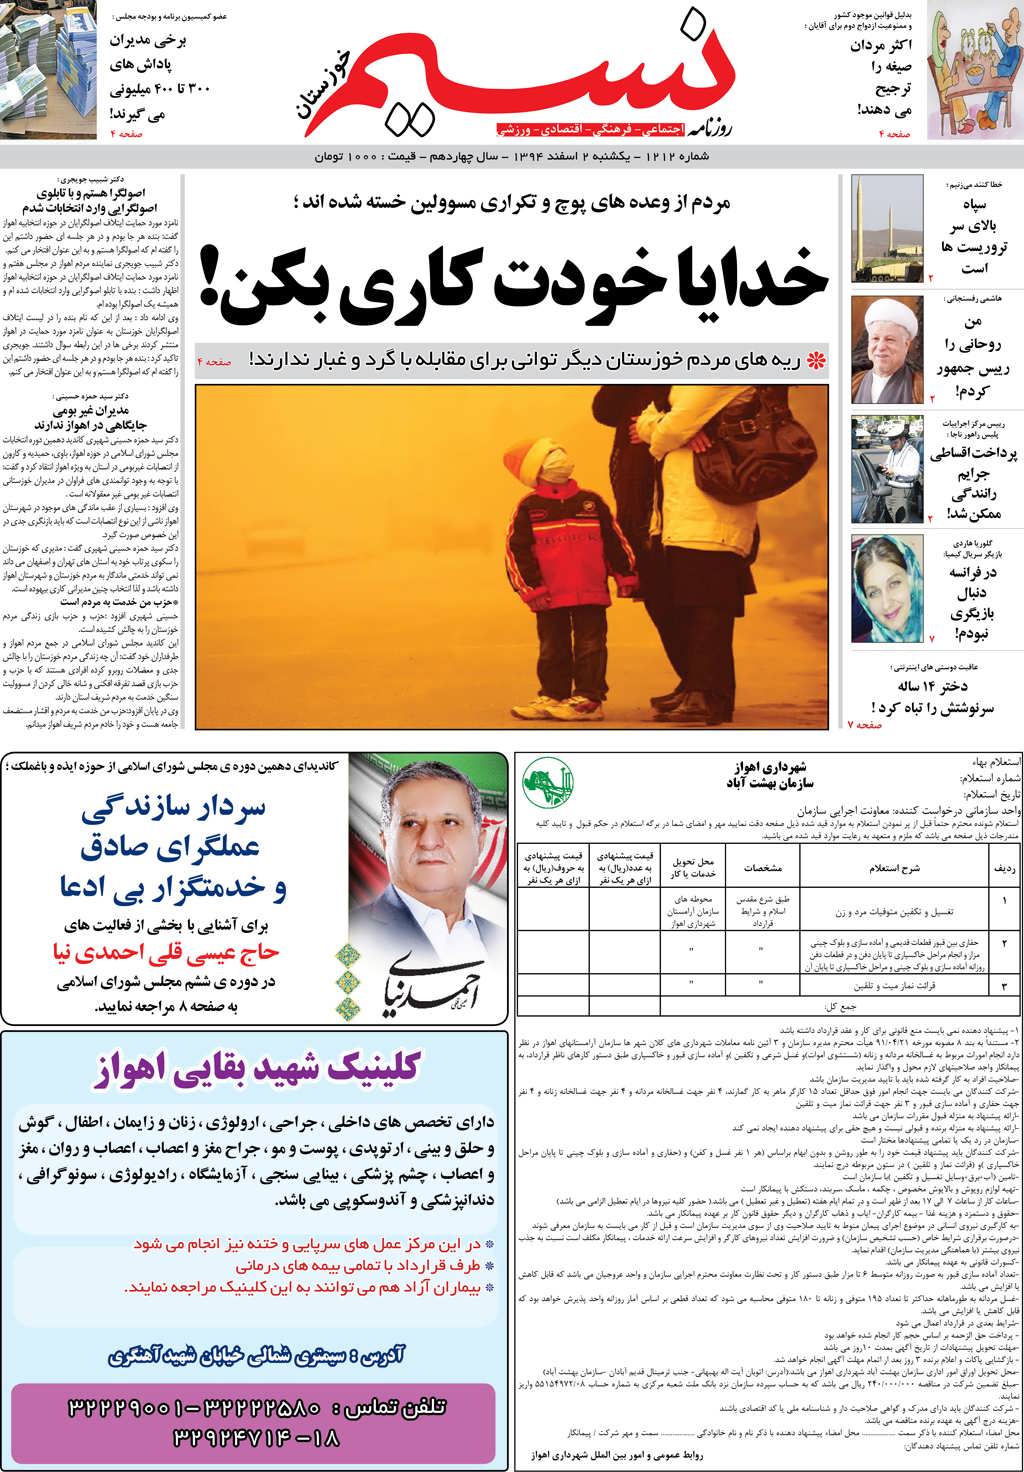 صفحه اصلی روزنامه نسیم شماره 1212